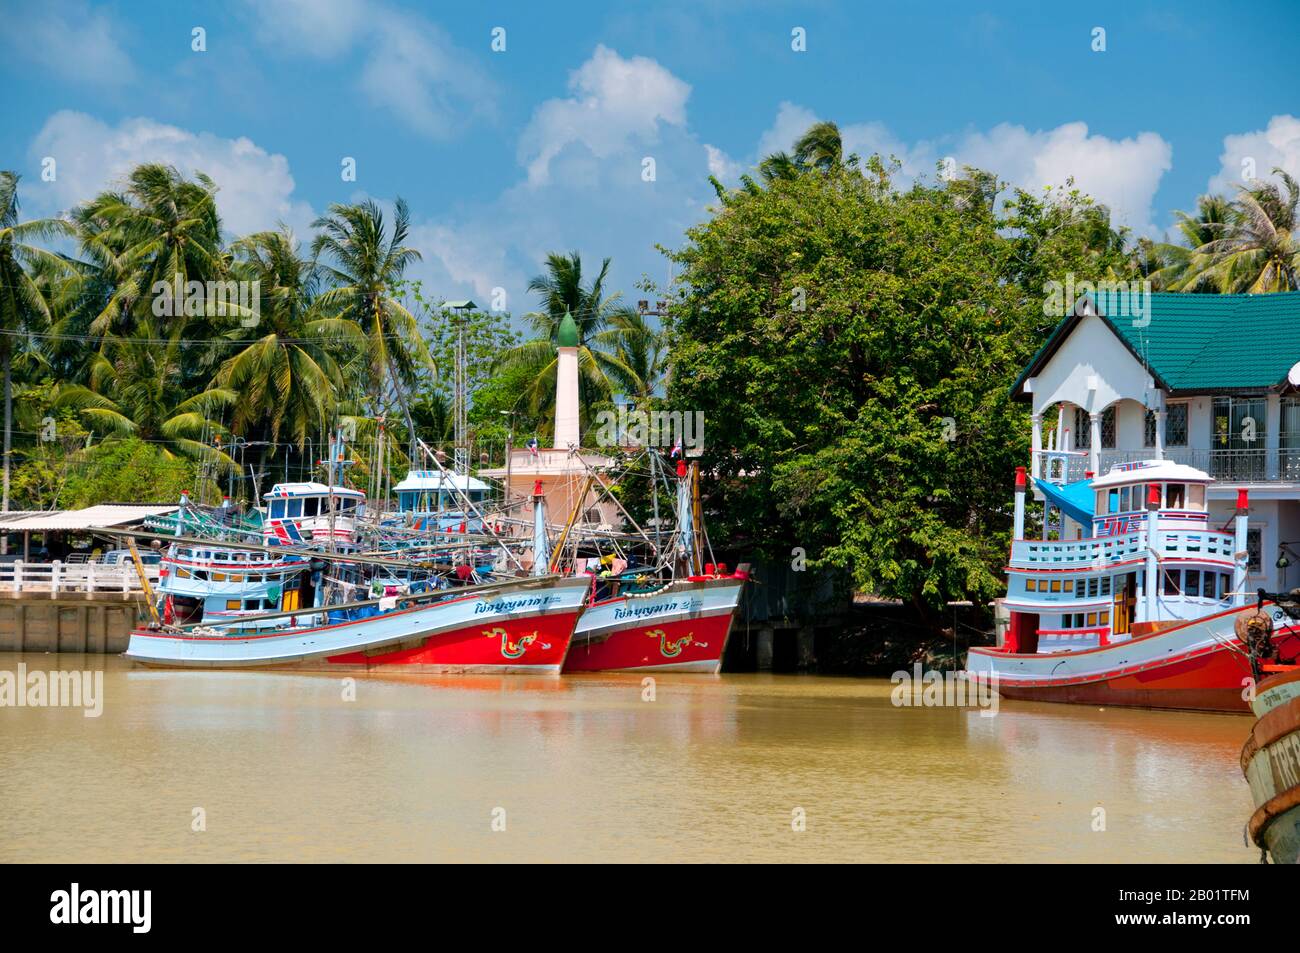 Thailandia: Grandi pescherecci, Saiburi, Thailandia meridionale. Il piccolo centro di Saiburi è la capitale del distretto di Saiburi, situato a circa 94 km (60 miglia) a sud-est di Pattani nel sud della Thailandia. È anche chiamato Selindung Bayu o “riparo dal vento” dalla popolazione locale di pescatori musulmana malese ed è forse il più importante porto di pesca al di fuori di Pattani nella stessa provincia di Pattani. Foto Stock